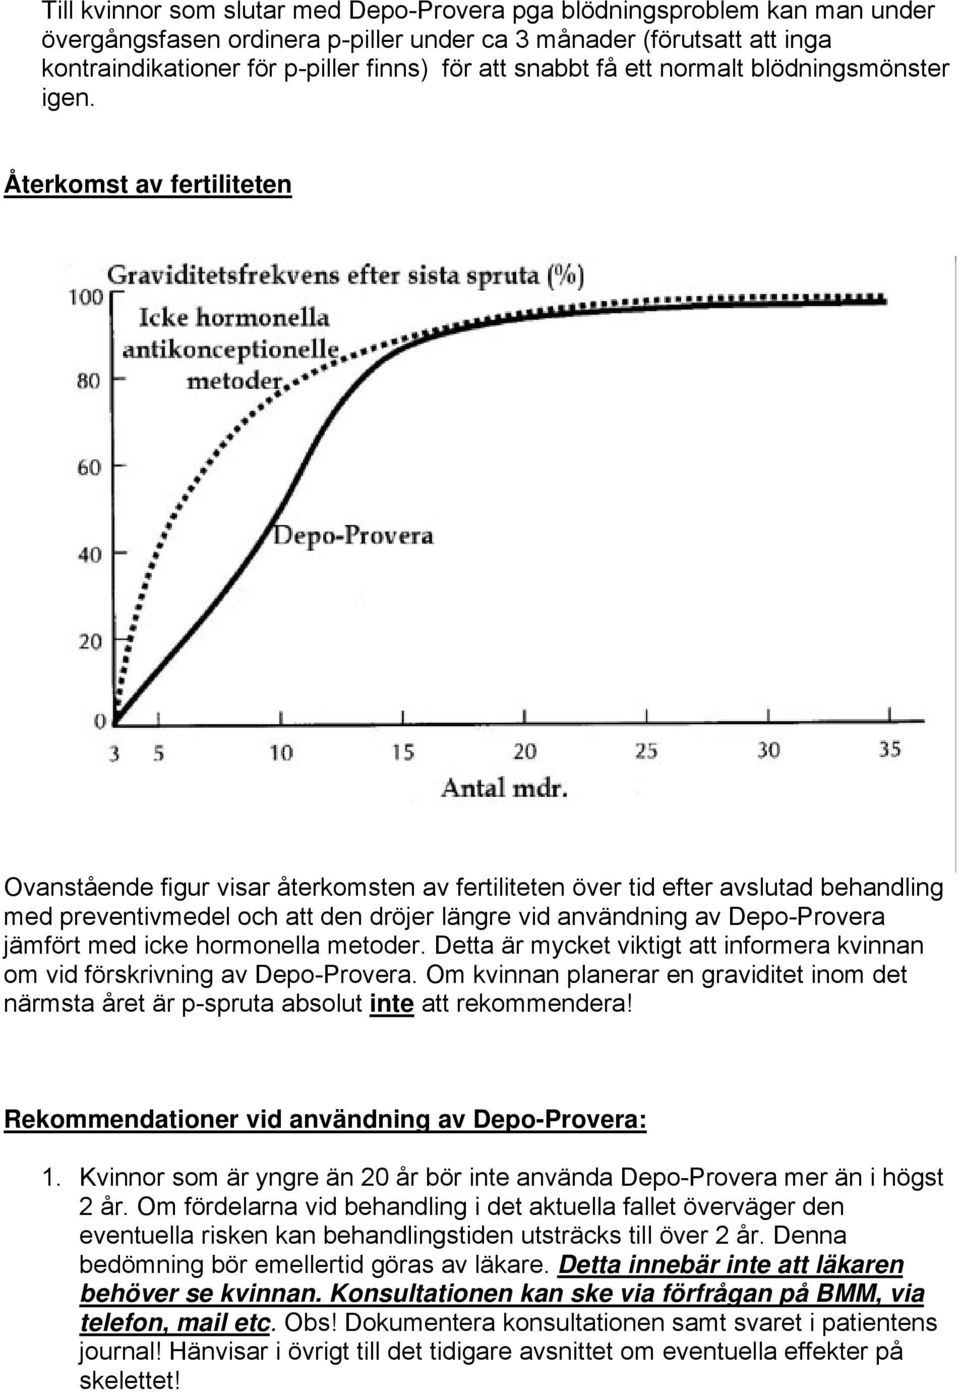 Återkomst av fertiliteten Ovanstående figur visar återkomsten av fertiliteten över tid efter avslutad behandling med preventivmedel och att den dröjer längre vid användning av Depo-Provera jämfört